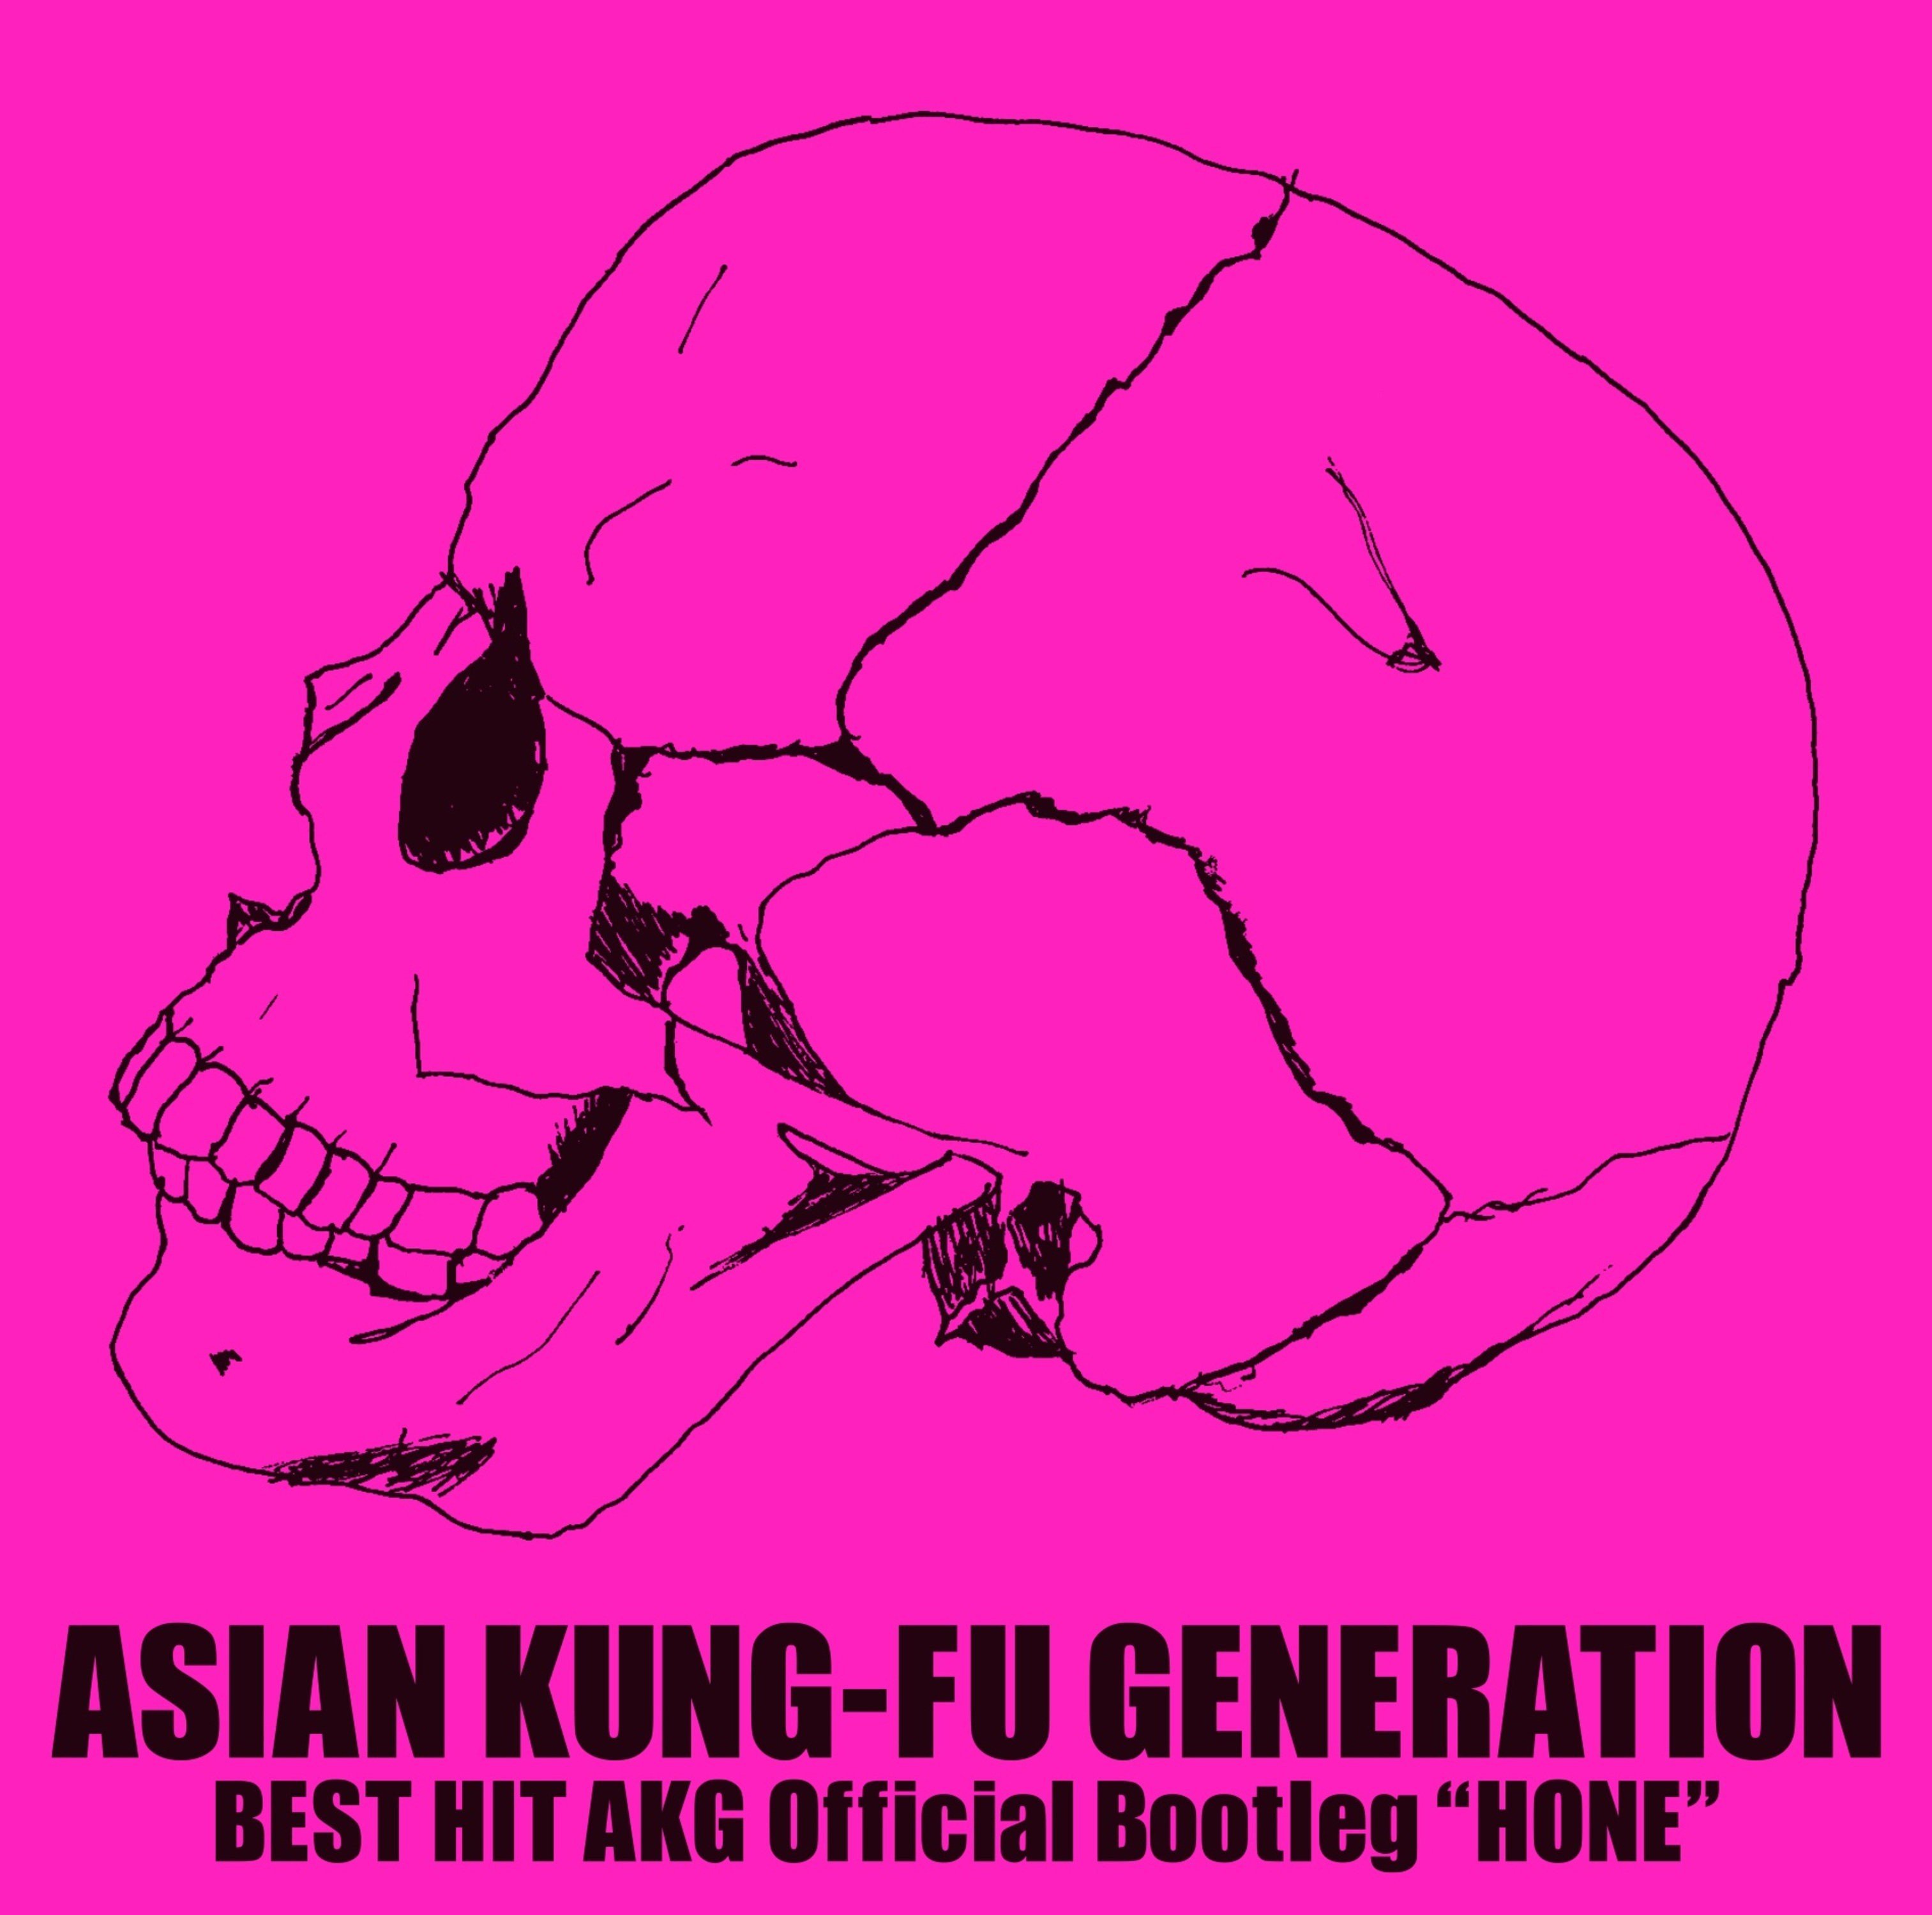 ASIAN KUNG-FU GENERATION - BEST HIT AKG Official Bootleg “HONE” [FLAC 24bit/96kHz]